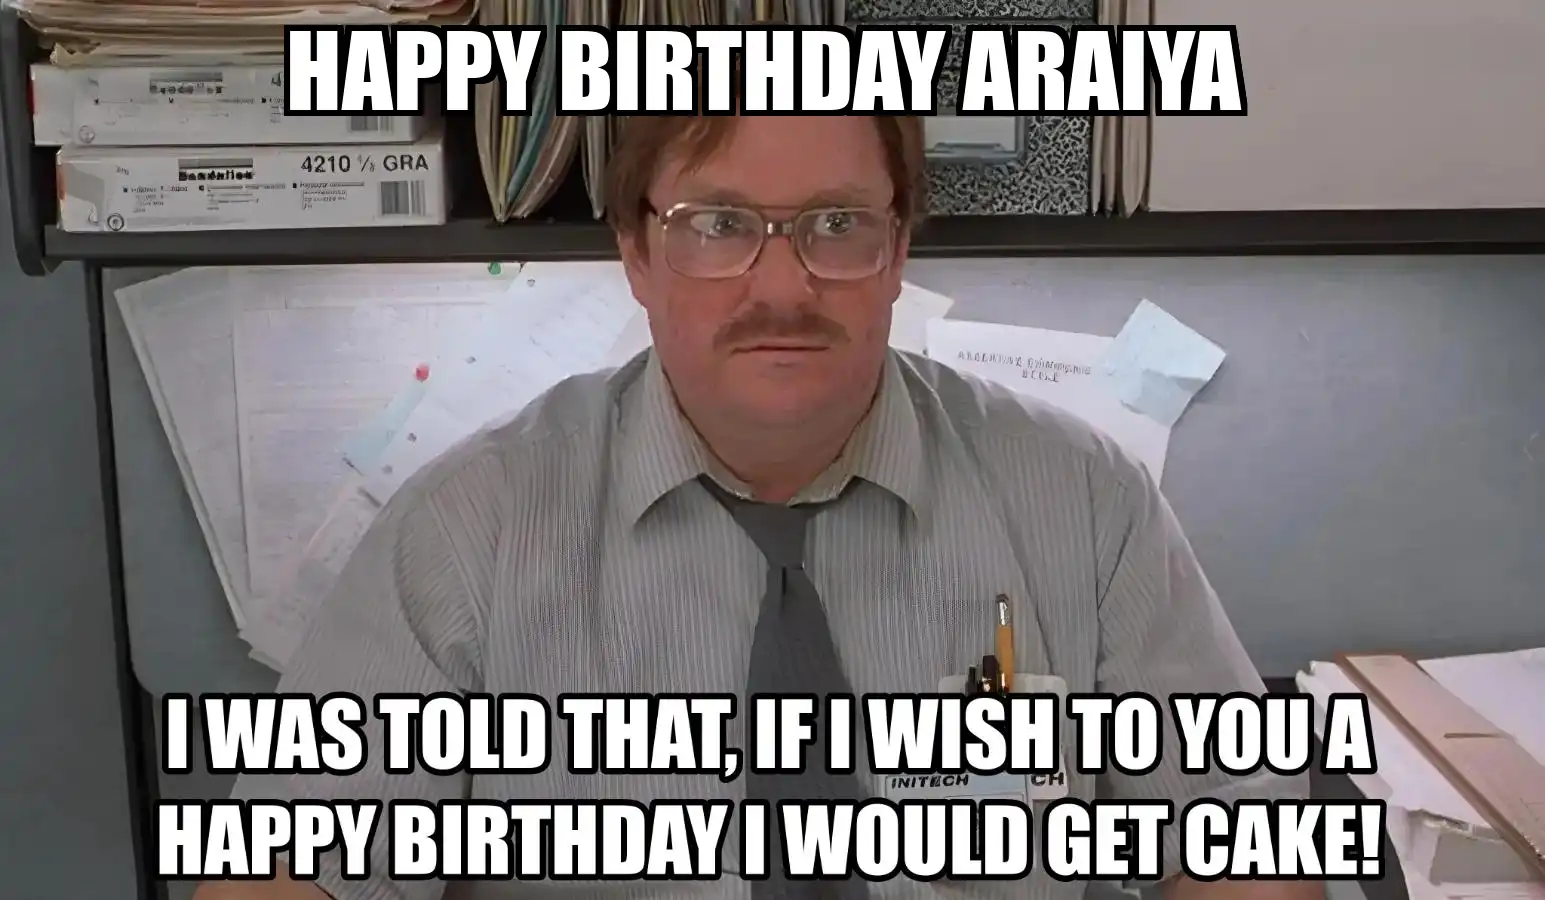 Happy Birthday Araiya I Would Get A Cake Meme